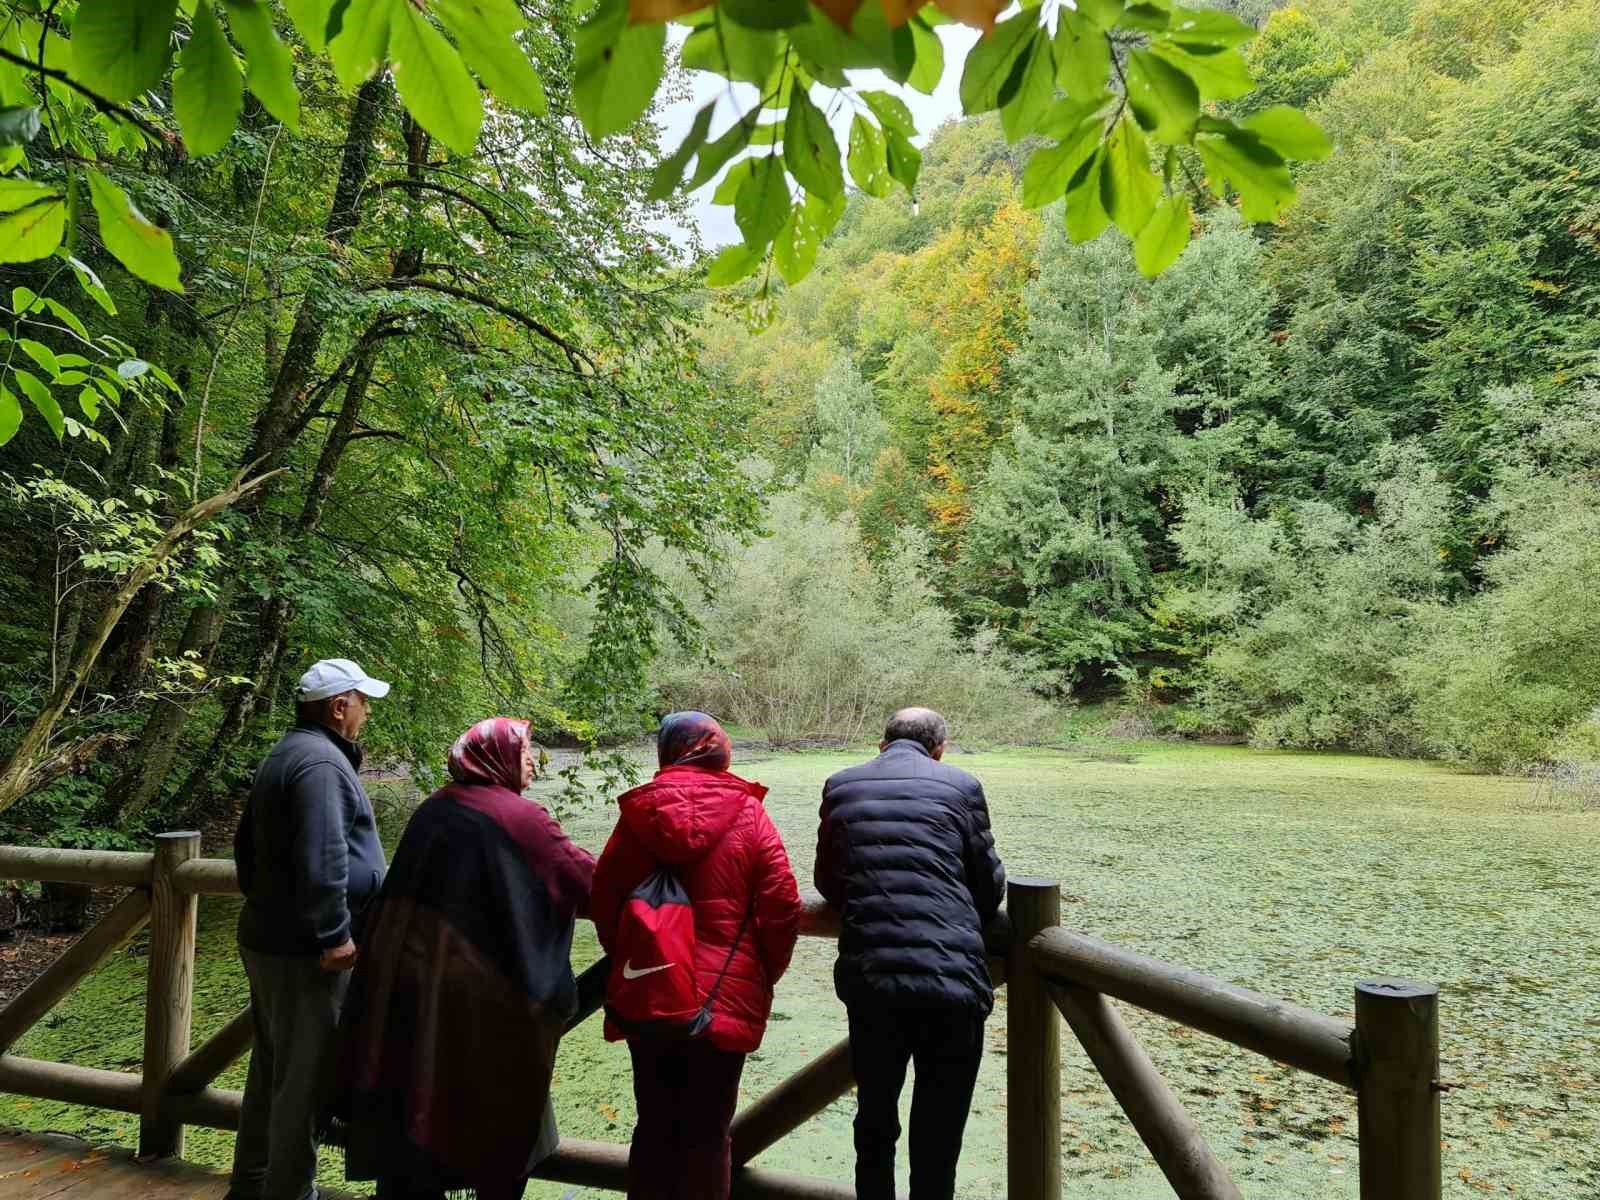 Bolu Belediyesi “Doğa Etkinlikleri” 8 Mayıs’ta Başlıyor
